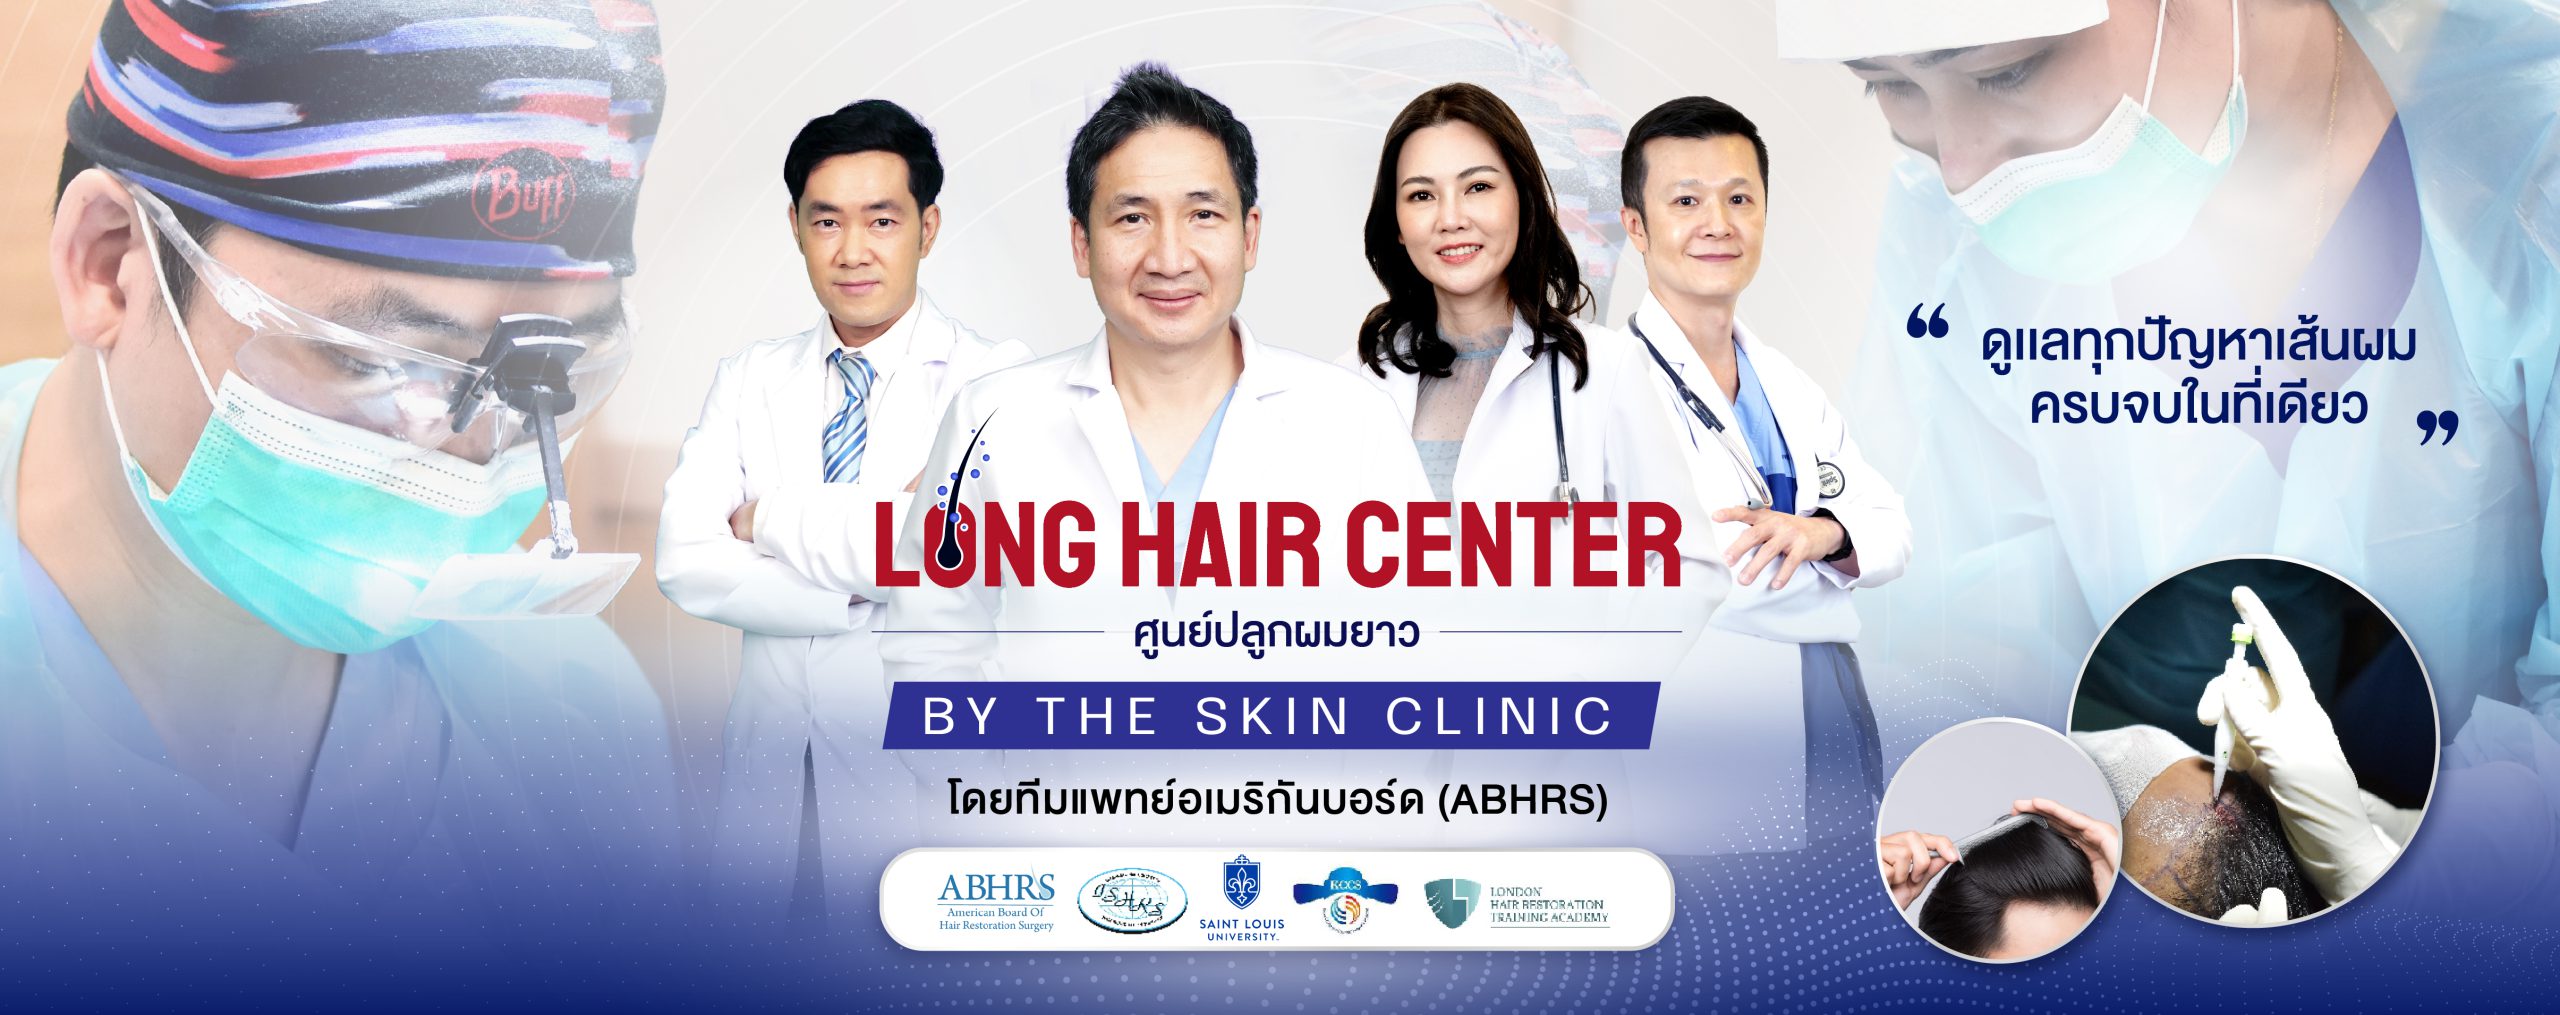 Hair transplant Thailand